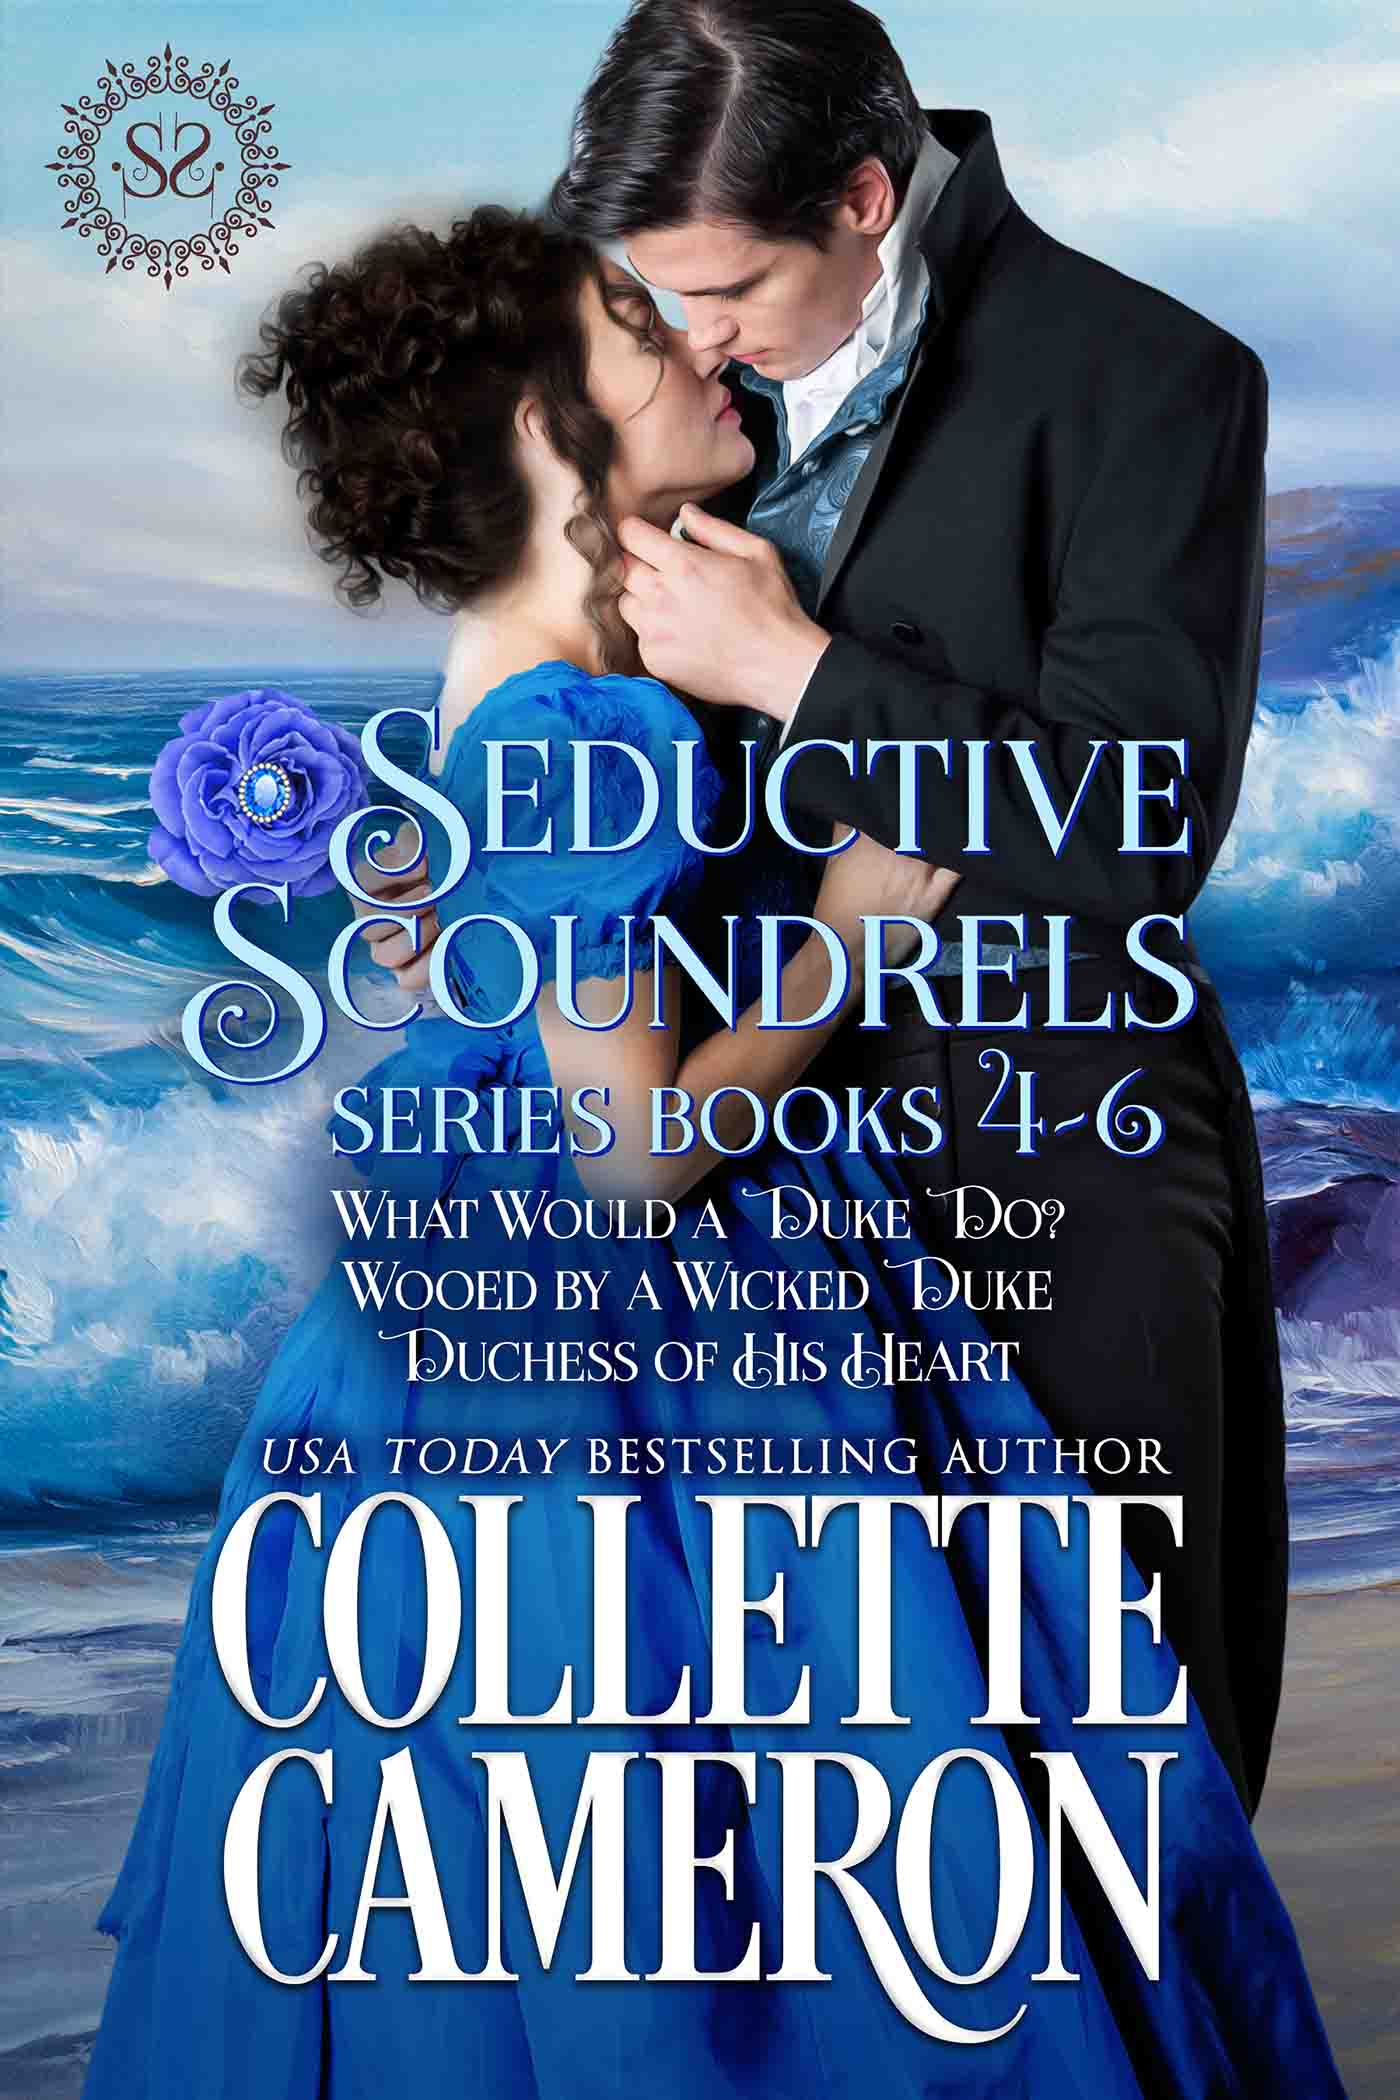 Collette's Historical Romances 7